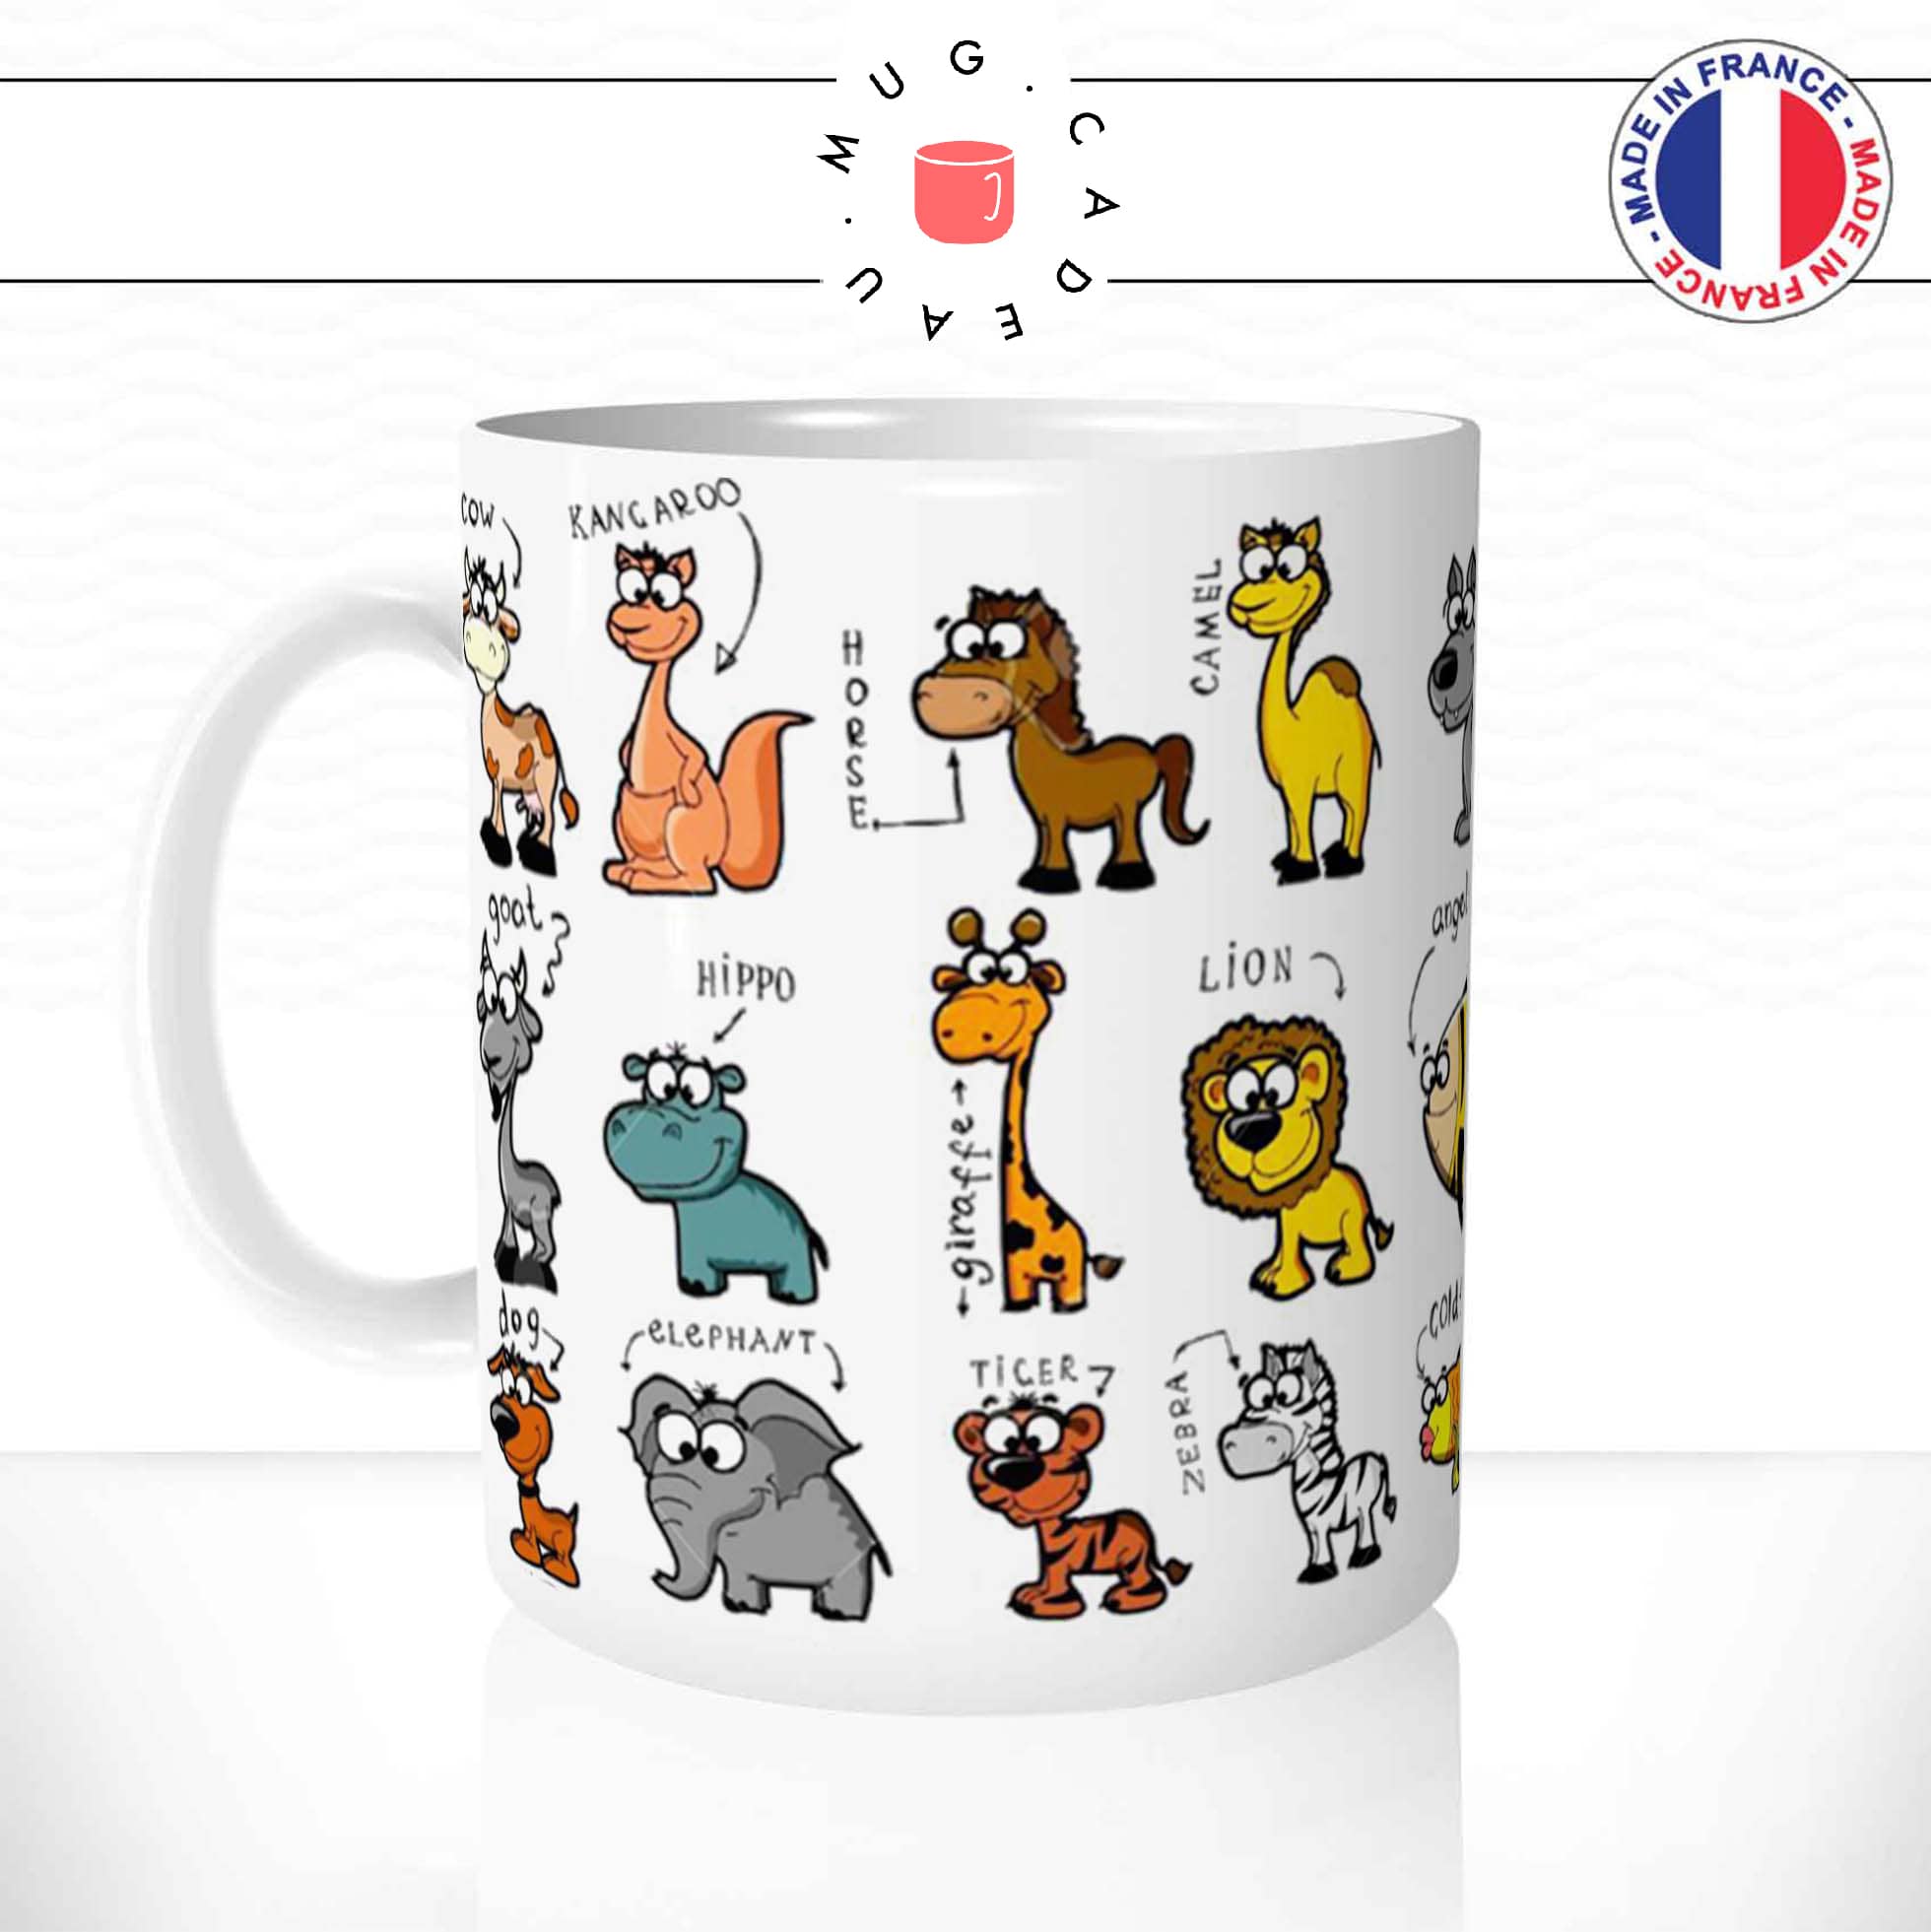 mug-animaux-tasse-ref3-mugs-tasses-cafe-the-personnalise-enfant-apprendre-animal-min